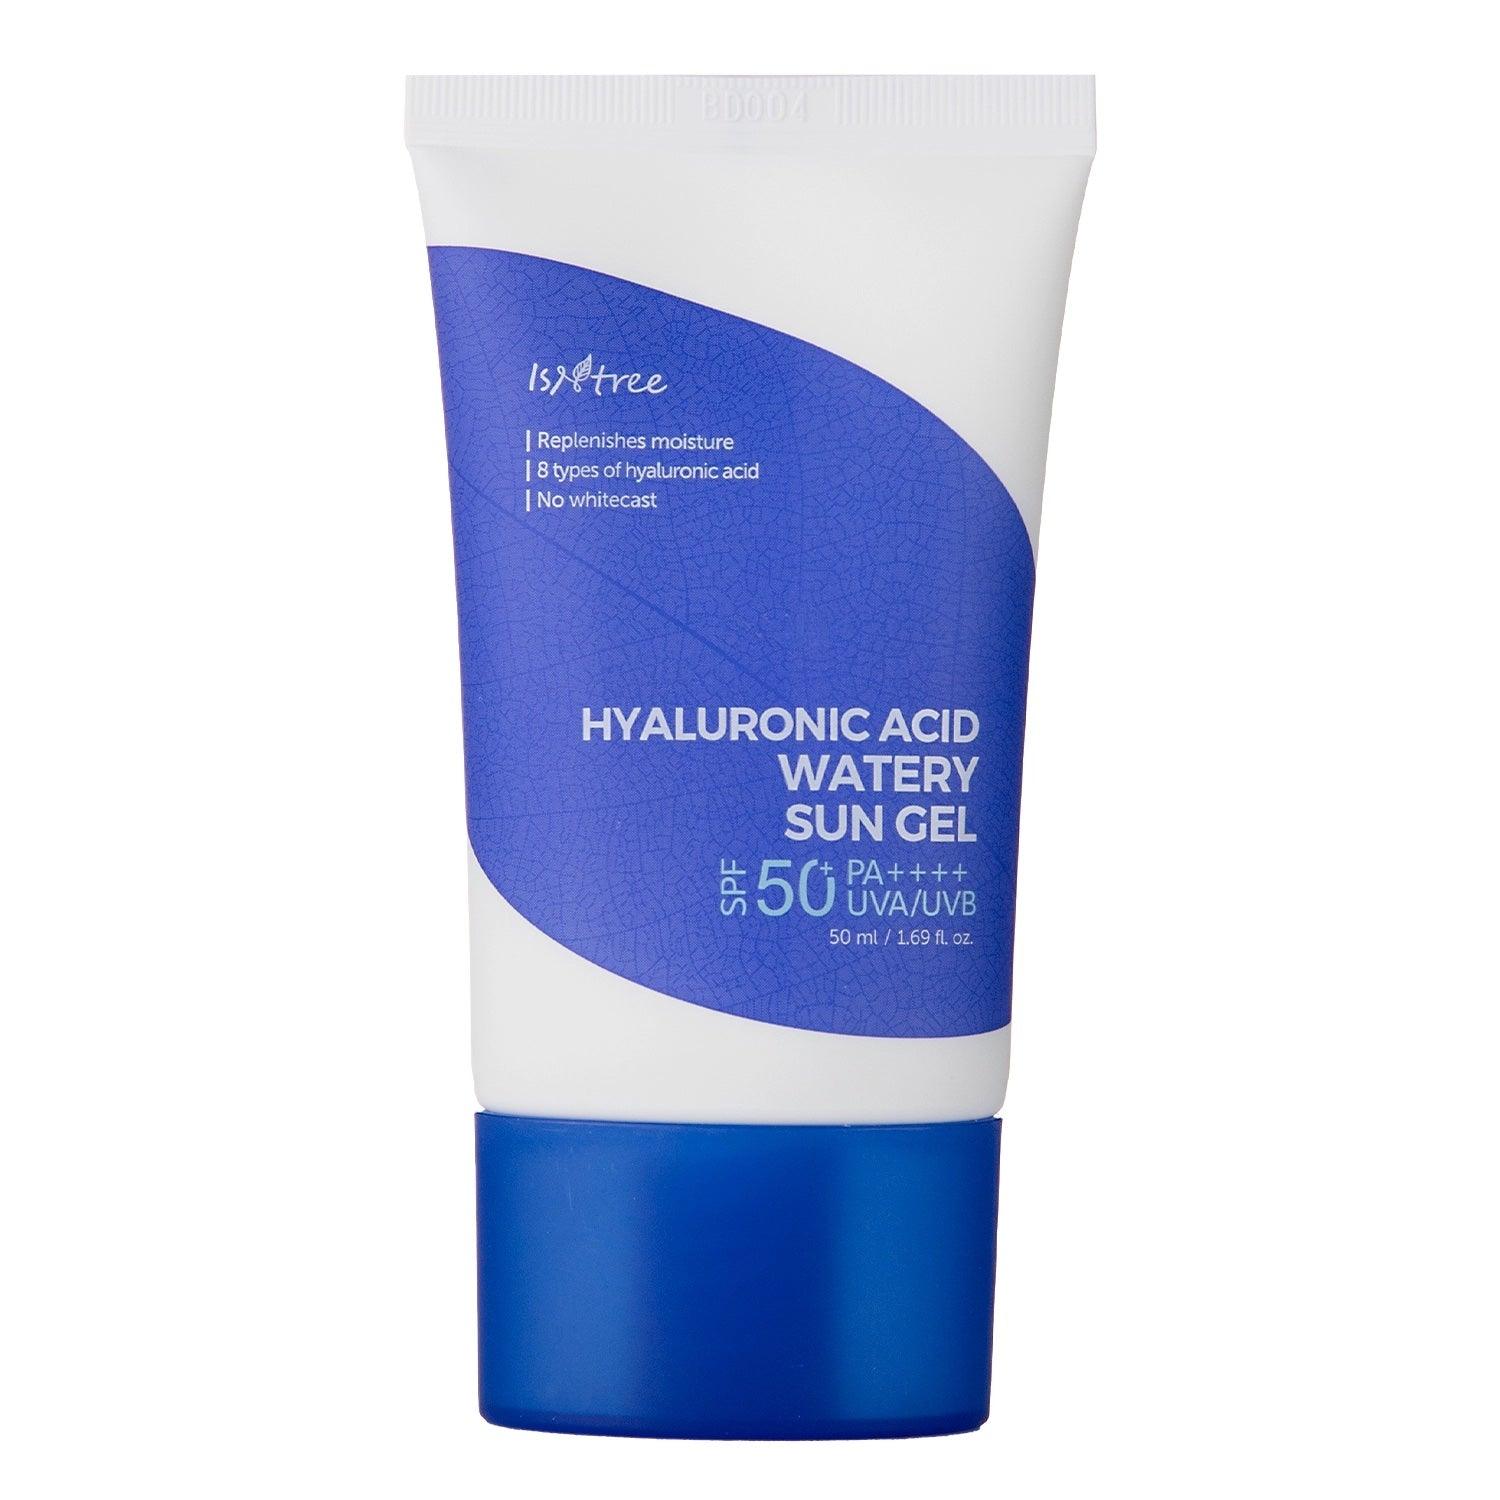 Hyaluronic Acid Watery Sun Gel - 50 ml - K-Beauty Arabia